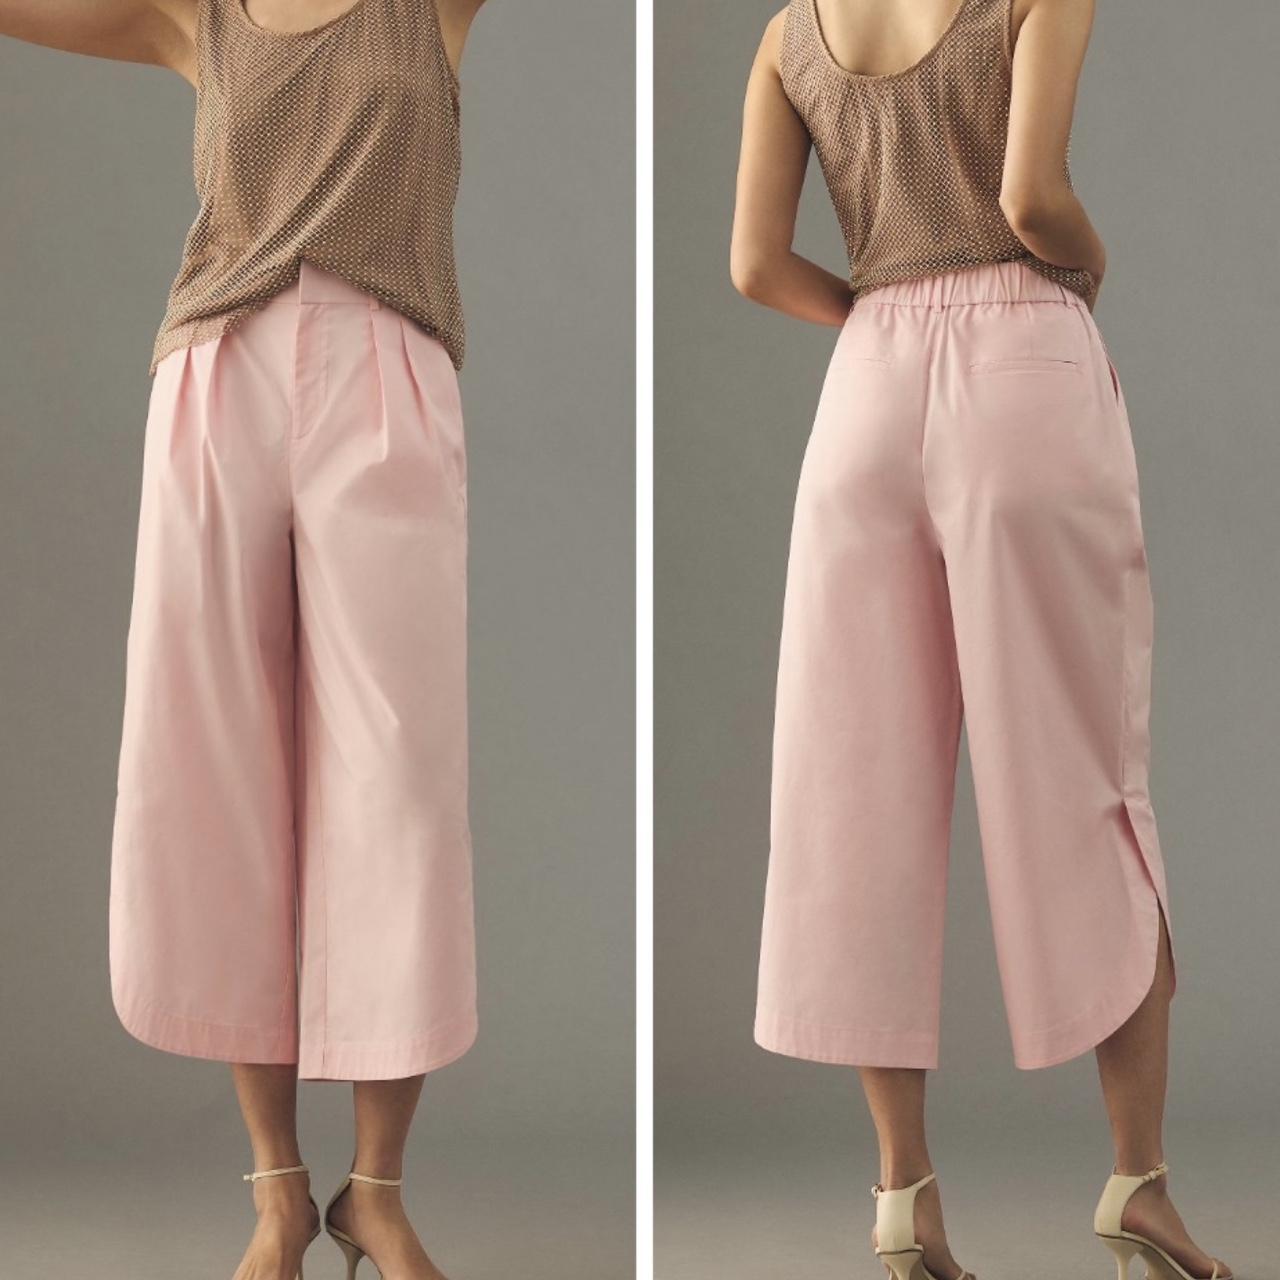 Van Heusen Woman Trousers & Leggings, Van Heusen Pink Pants for Women at  Vanheusenindia.com